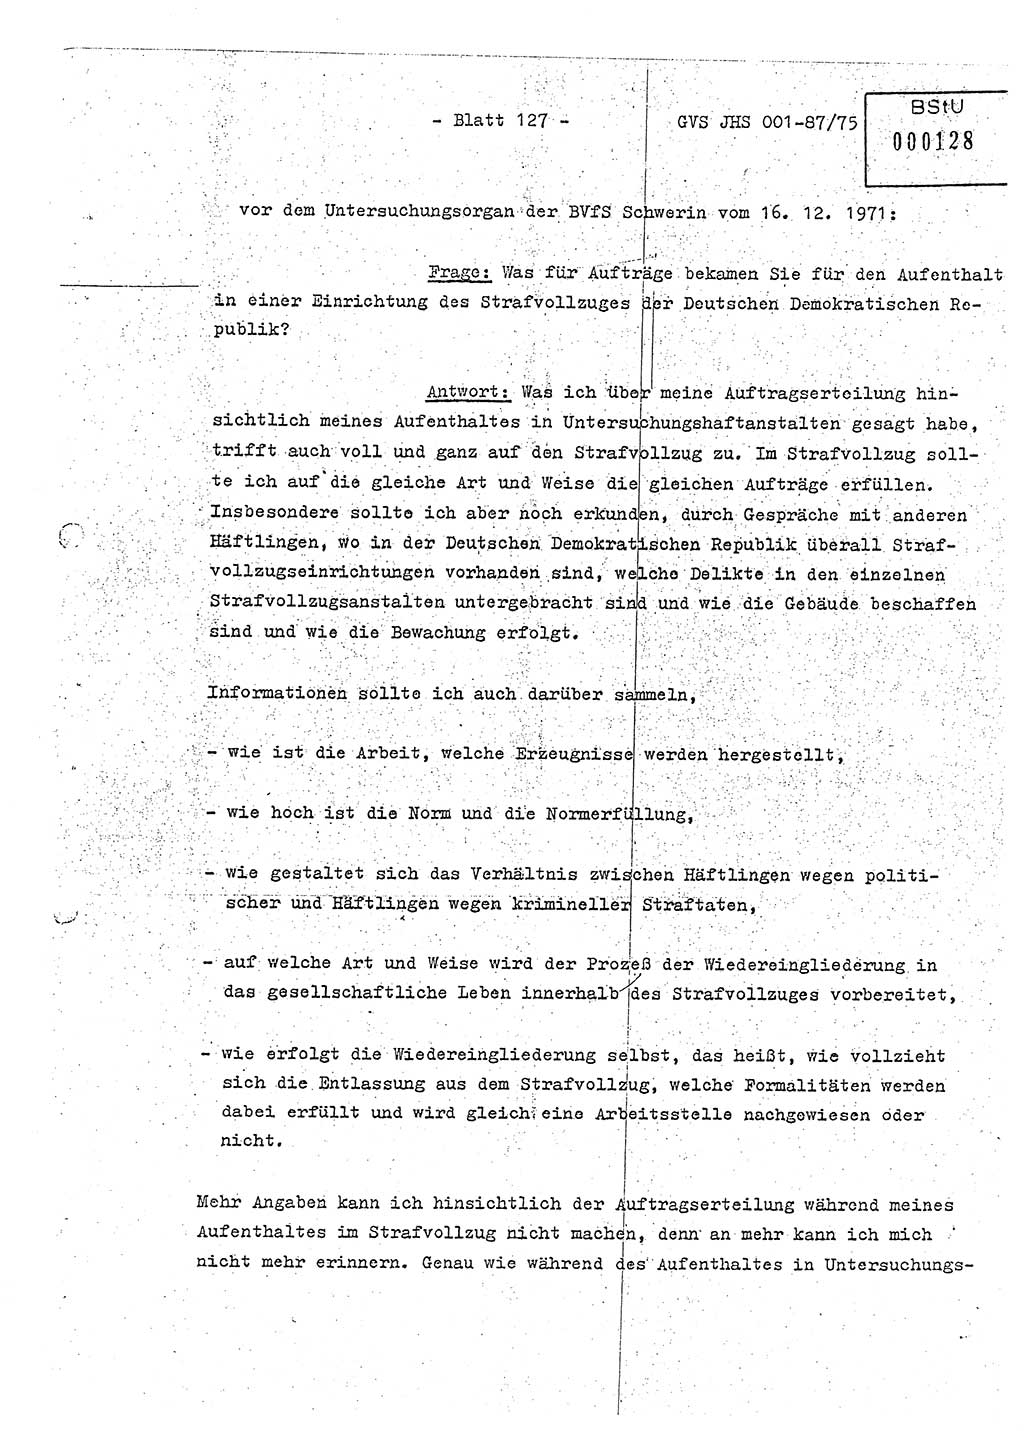 Diplomarbeit Hauptmann Volkmar Heinz (Abt. ⅩⅣ), Oberleutnant Lothar Rüdiger (BV Lpz. Abt. Ⅺ), Ministerium für Staatssicherheit (MfS) [Deutsche Demokratische Republik (DDR)], Juristische Hochschule (JHS), Geheime Verschlußsache (GVS) o001-87/75, Potsdam 1975, Seite 127 (Dipl.-Arb. MfS DDR JHS GVS o001-87/75 1975, S. 127)